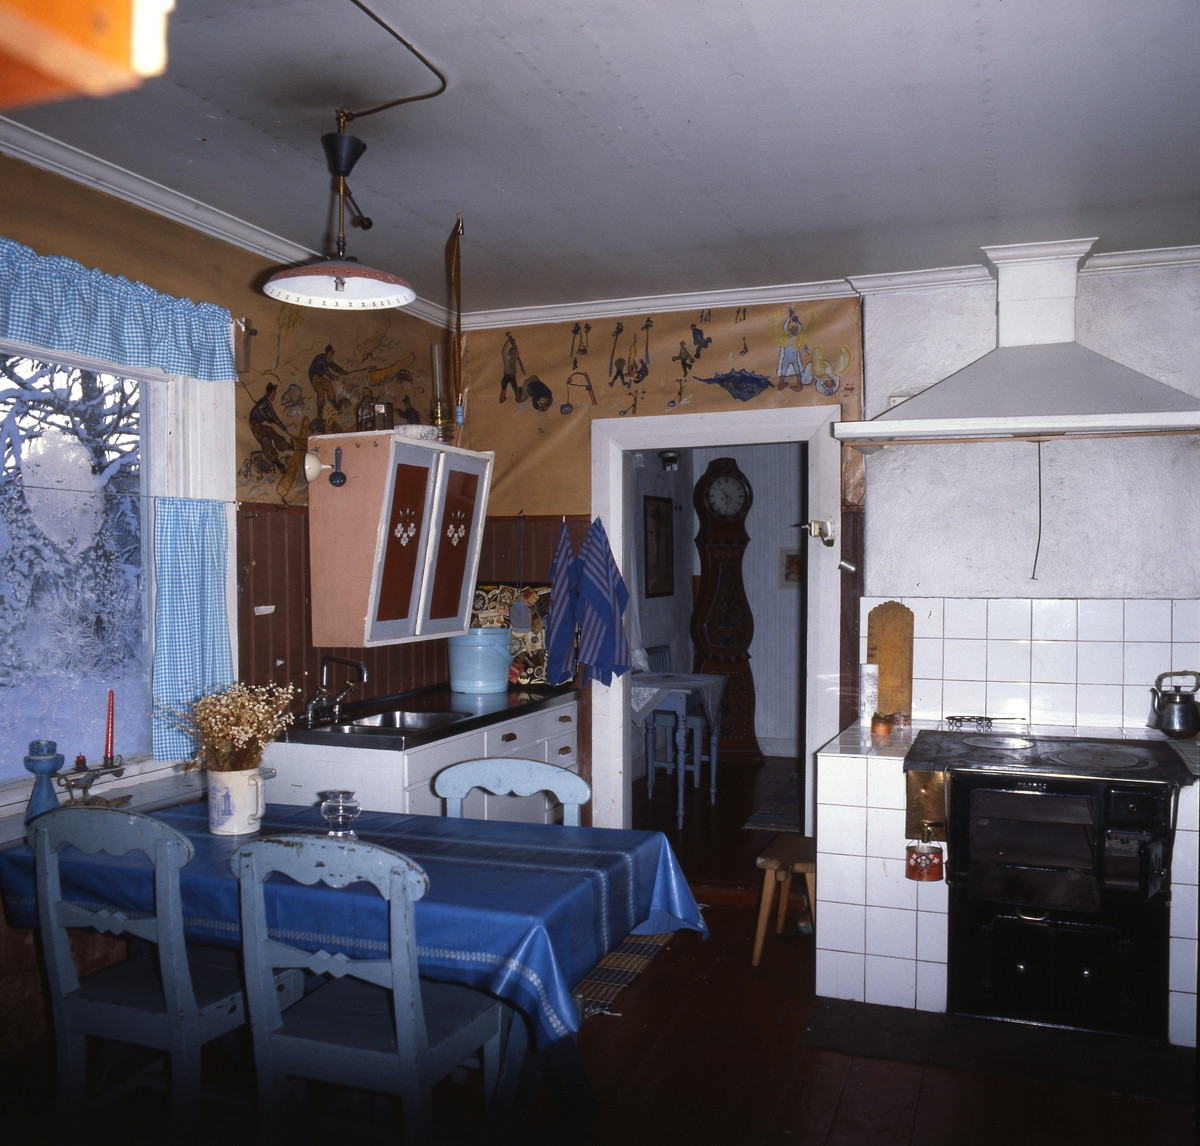 "Vikstentorpet". Ett av rummen i Albert Vikstens författartorp. Här finns bland annat skåp, köksbänk och vedspis. Väggarna är dekorerade med tecknade och målade motiv.